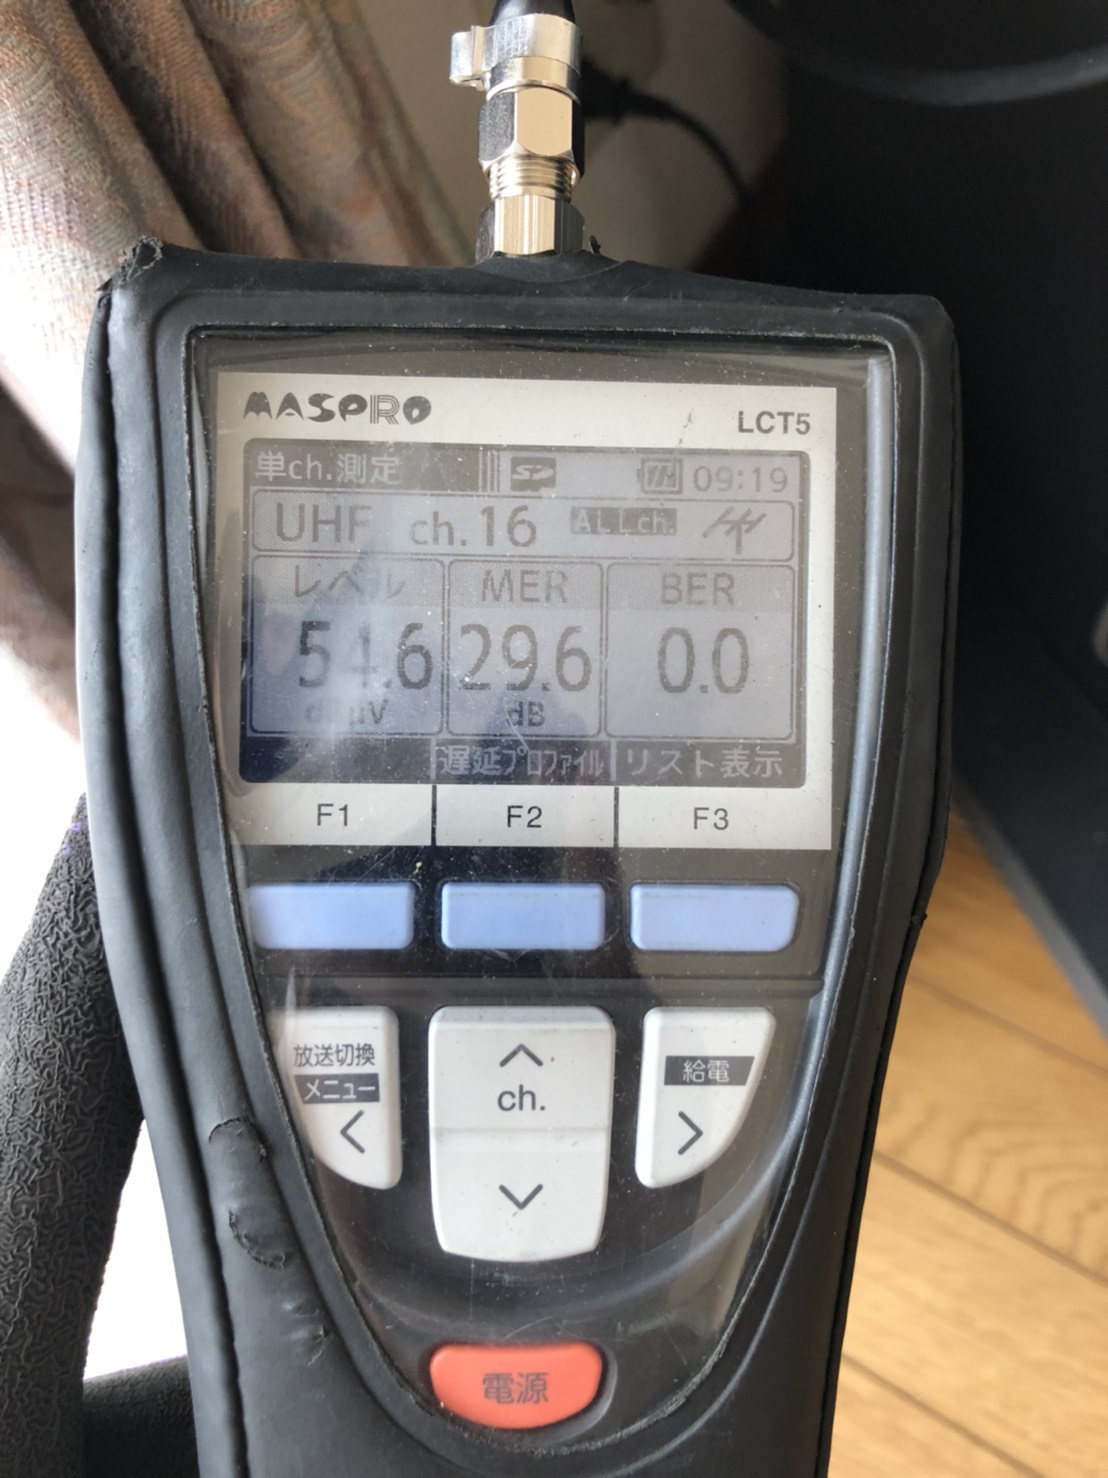 レベルチェッカーで測定した東京MXの電波レベル